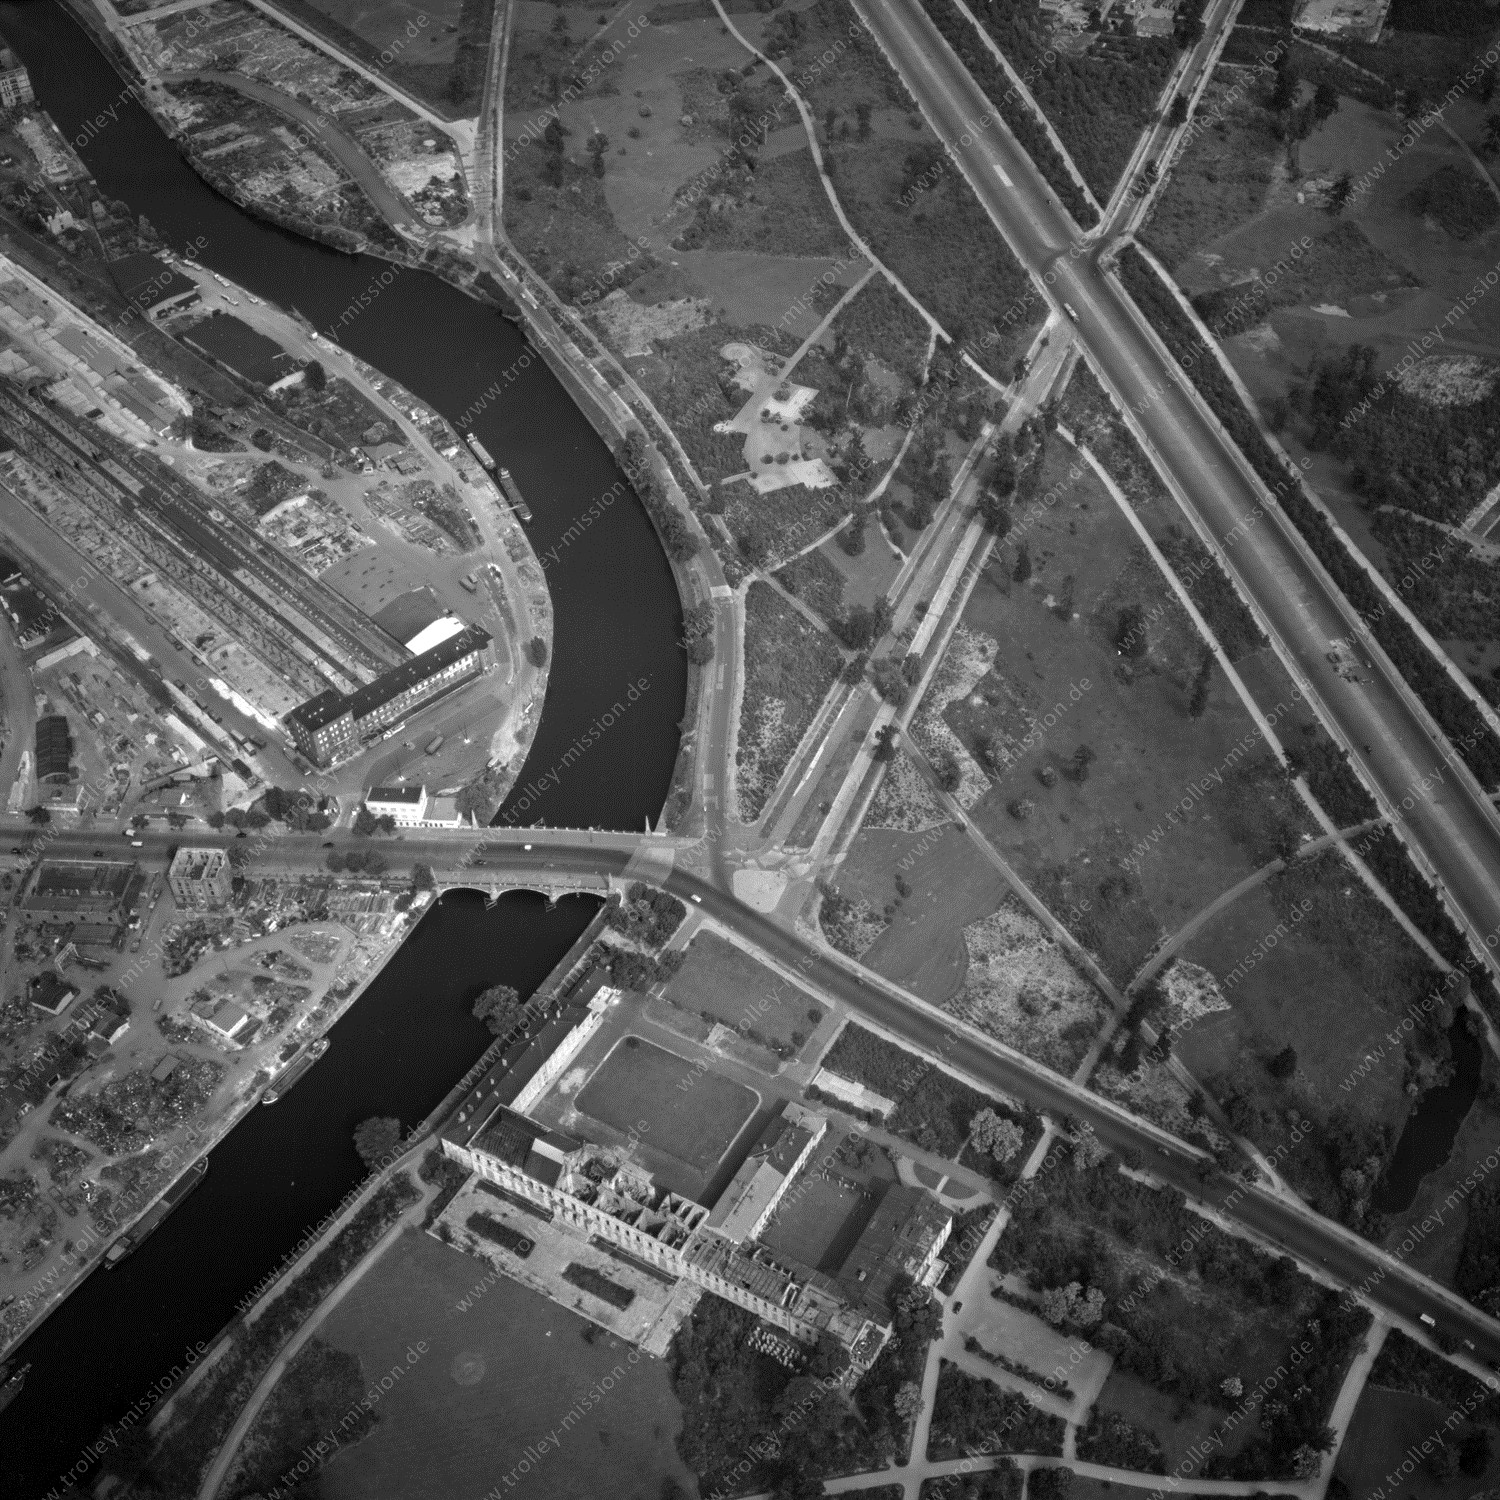 Alte Fotos und Luftbilder von Berlin - Luftbildaufnahme Nr. 07 - Historische Luftaufnahmen von West-Berlin aus dem Jahr 1954 - Flugstrecke Whiskey